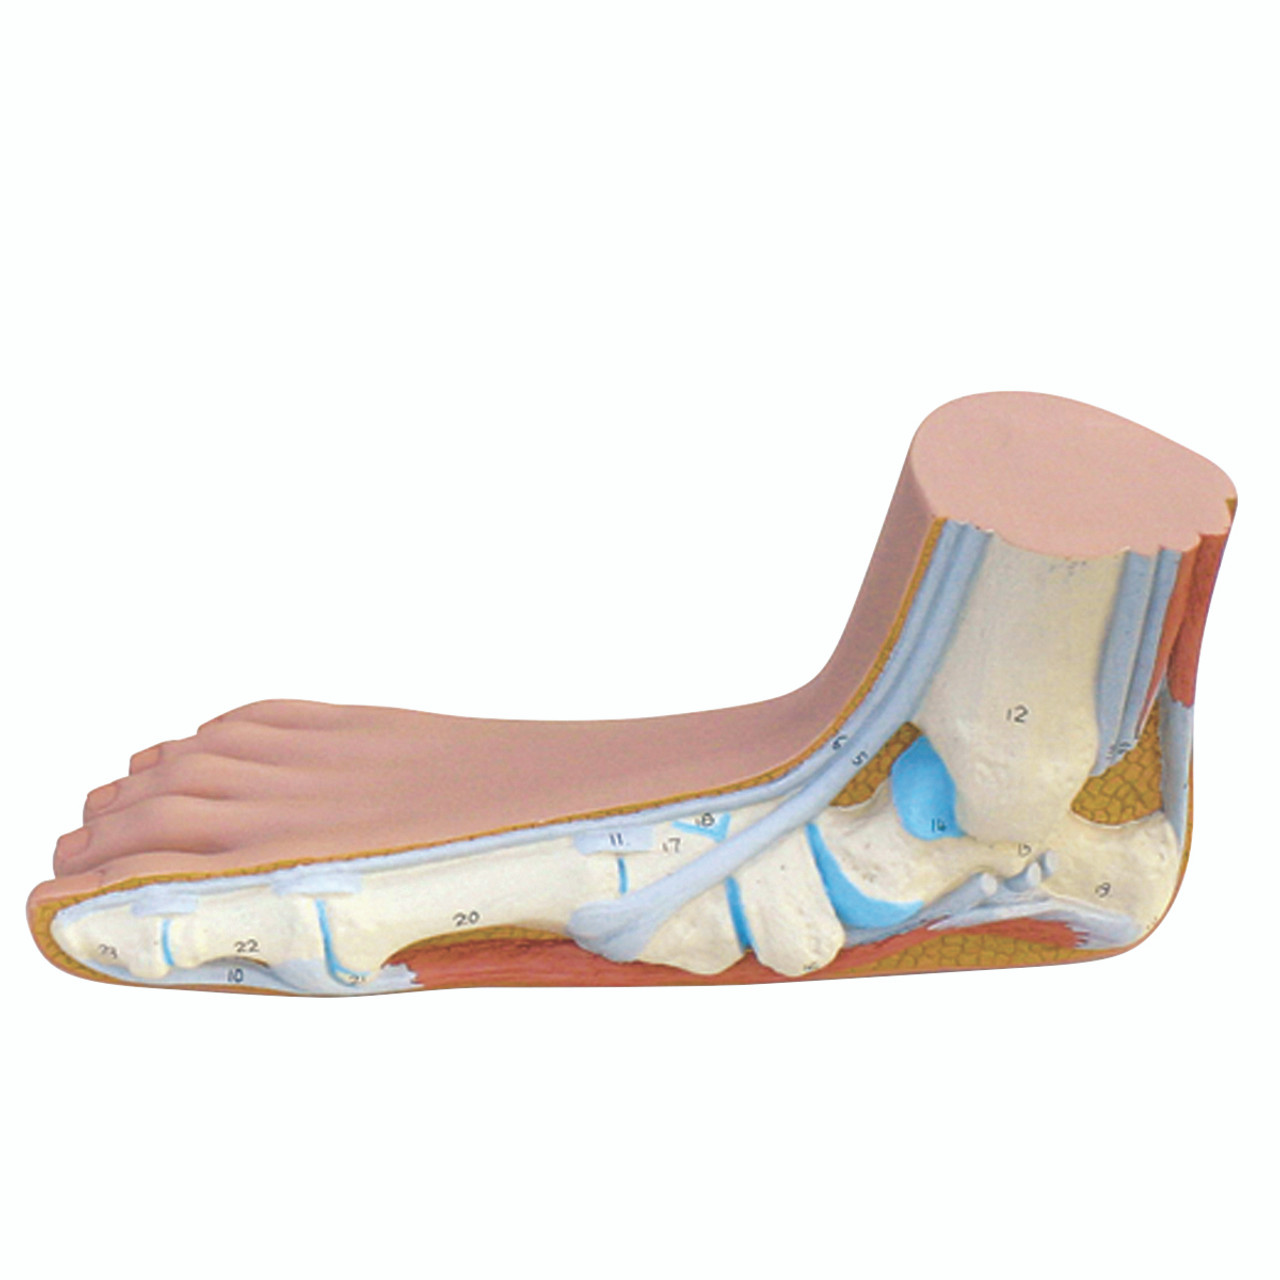 Anatomical Model - Flat Foot (Pes Panus)